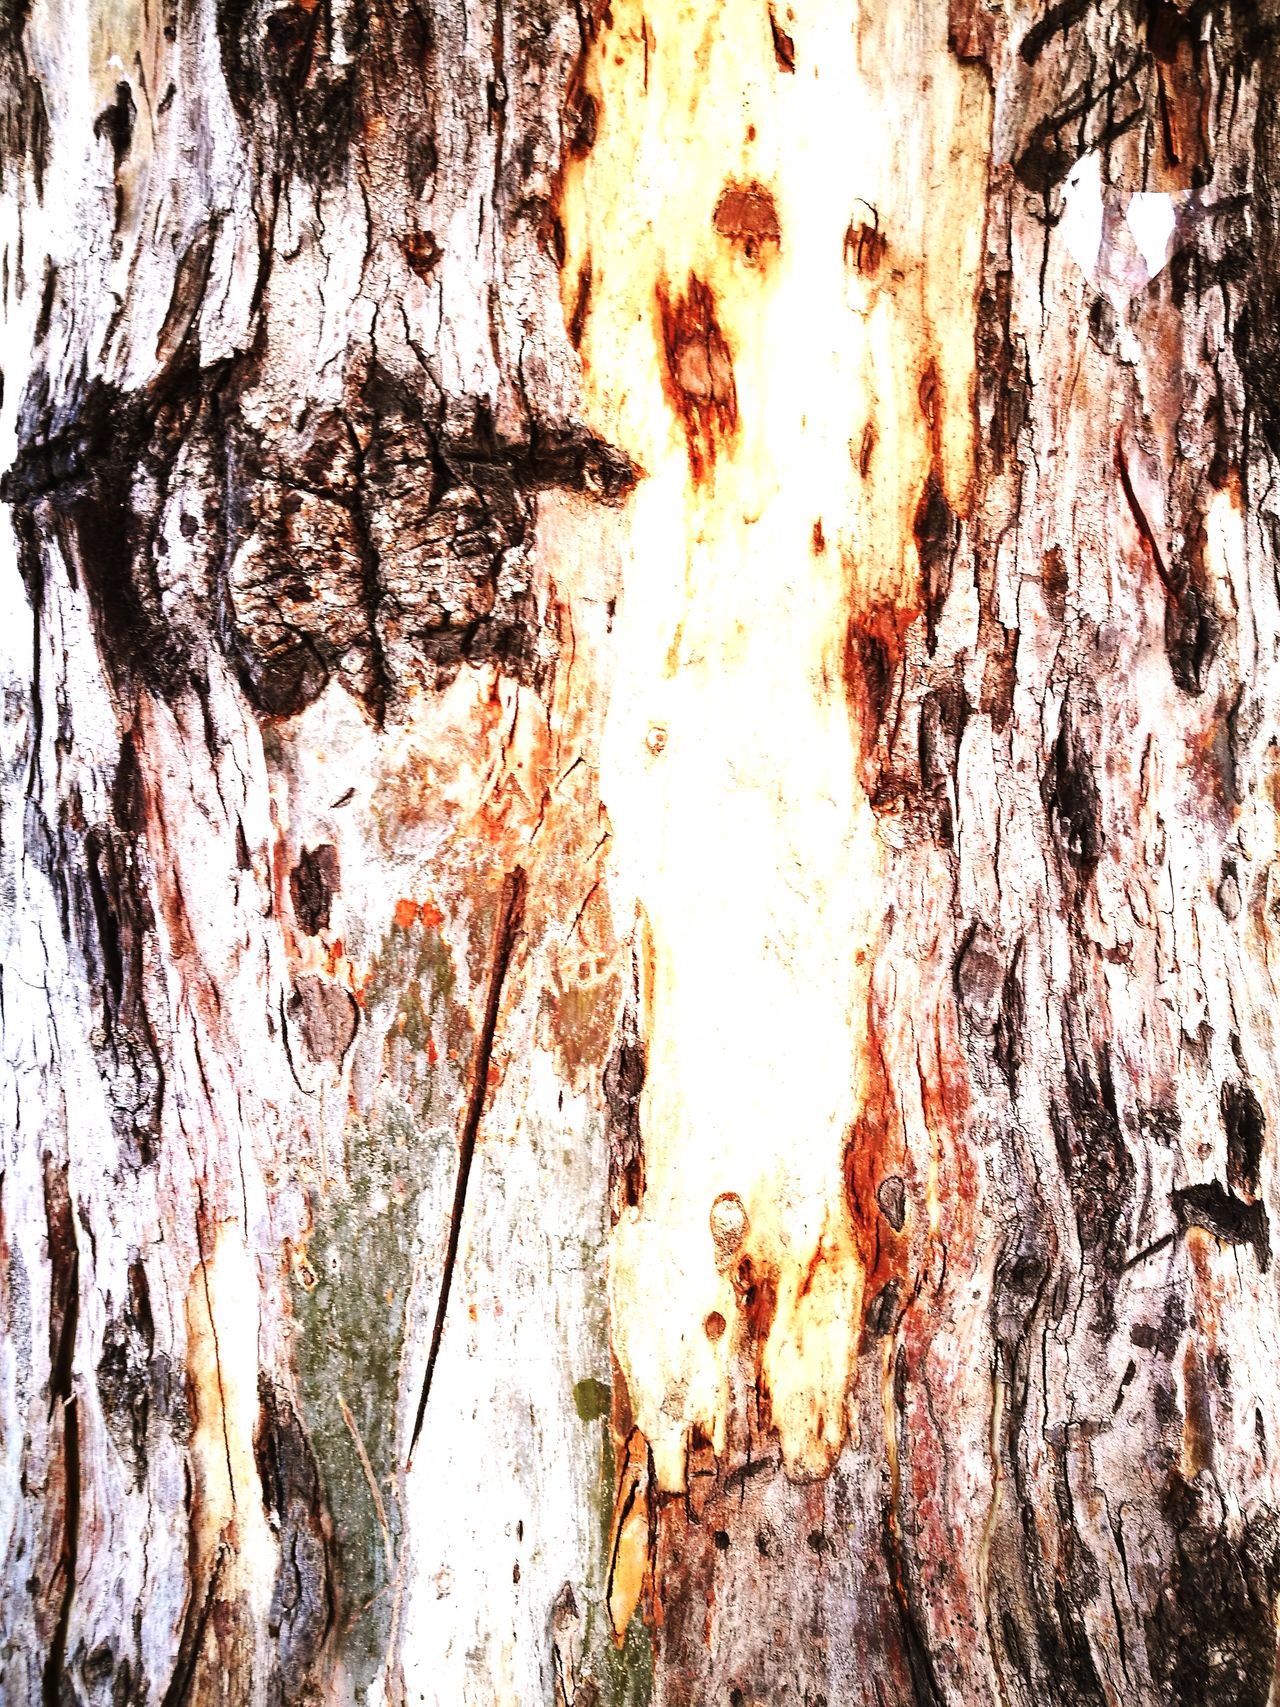 Of tree bark